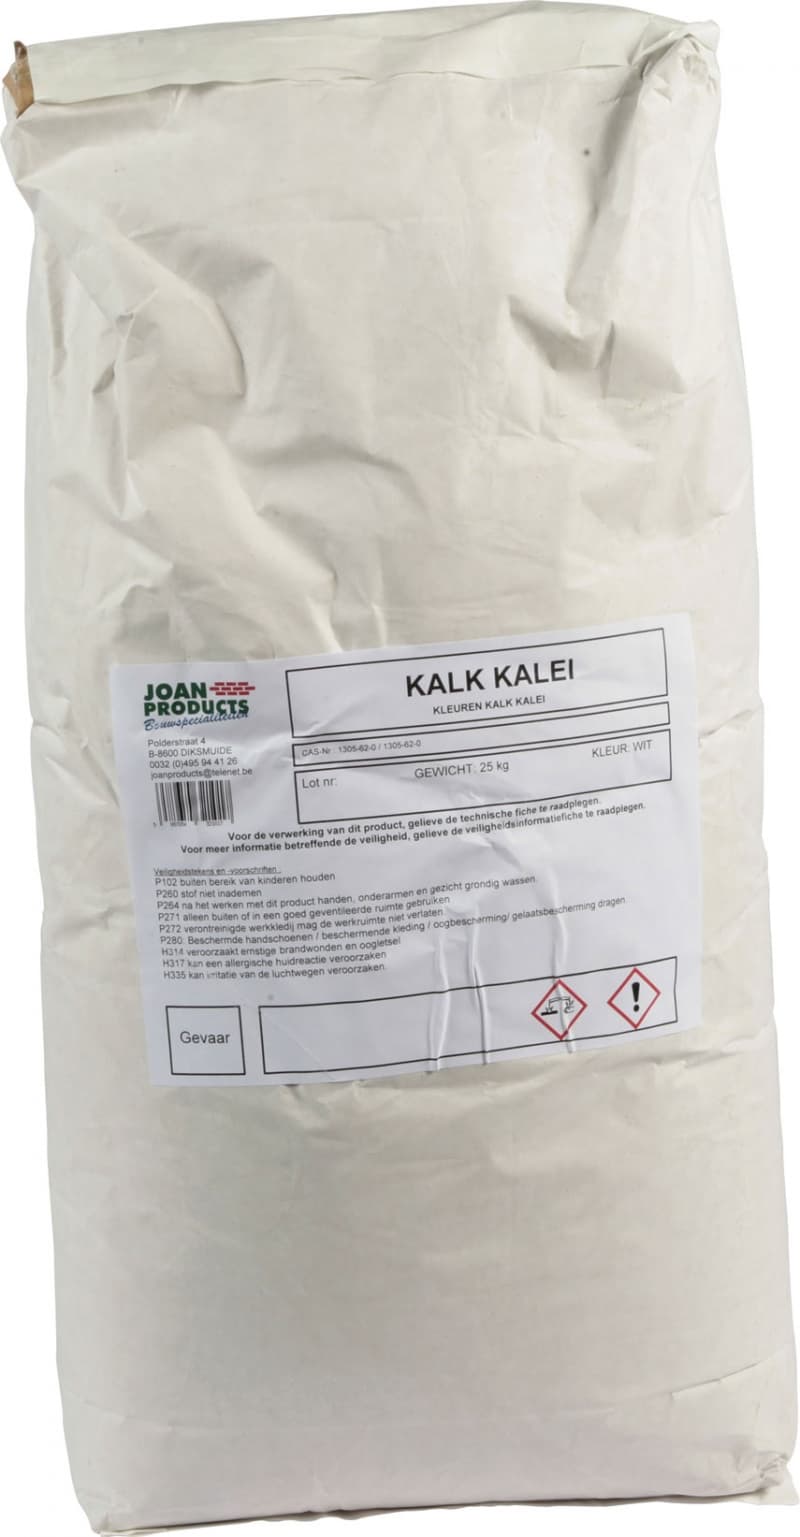 KALK KALEI - Joan Products